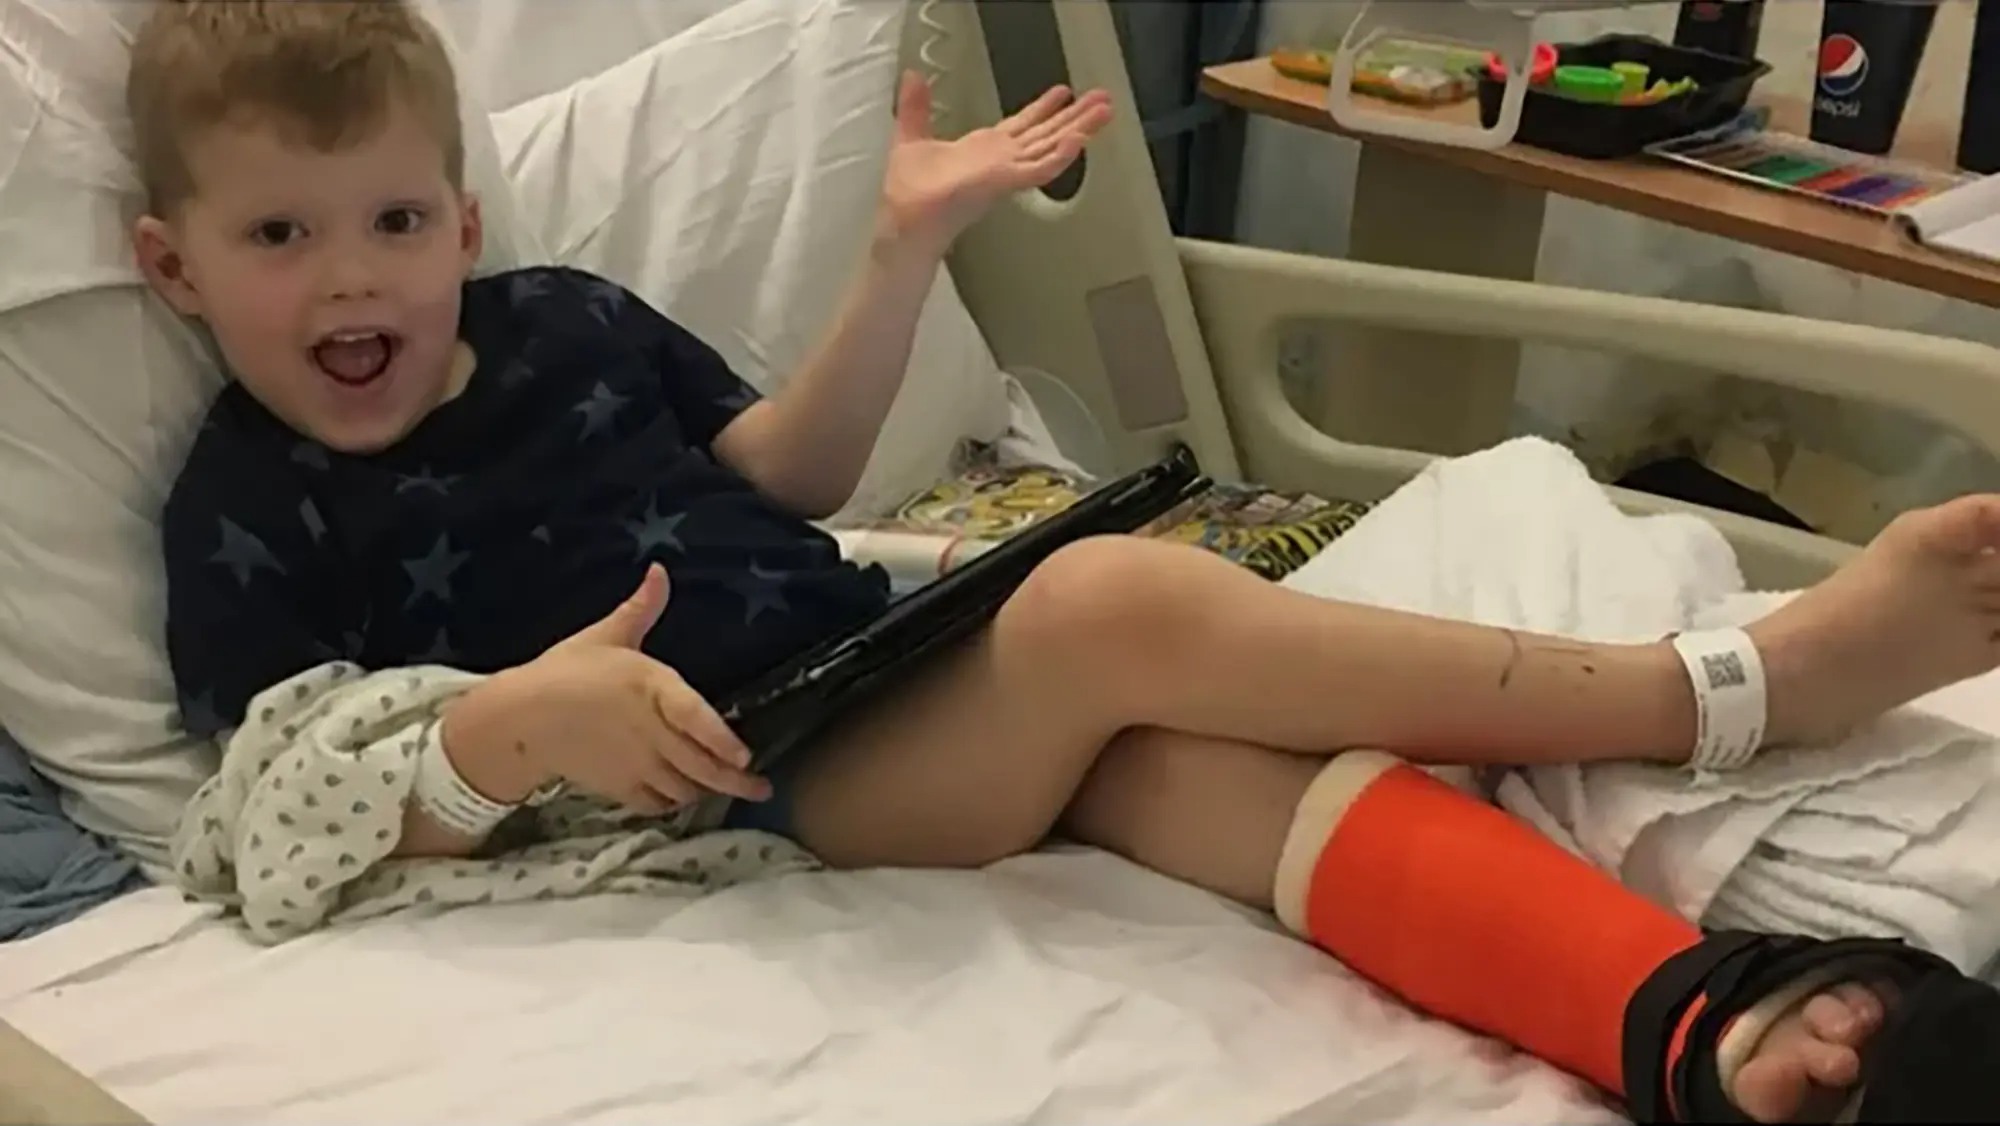 El niño que no puede sentir dolor: Caminó sobre una pierna rota durante días